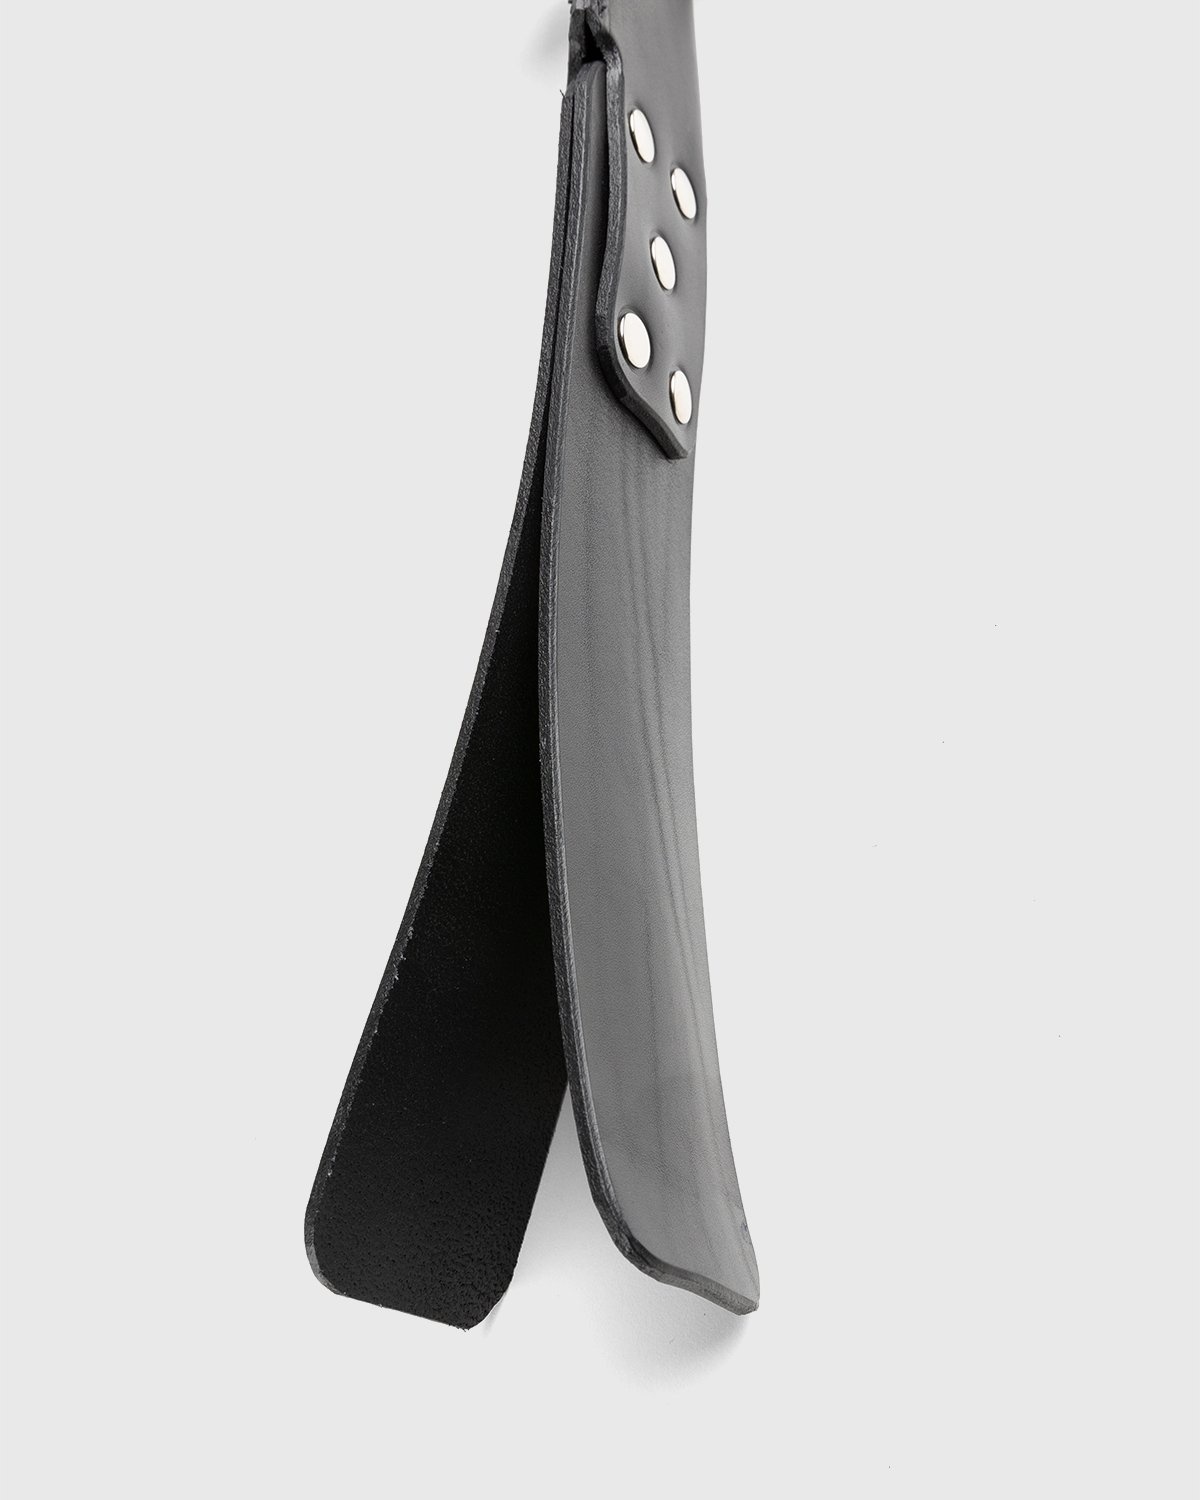 Highsnobiety x Butcherei Lindinger – Double Leather Paddle Black - Keychains - Black - Image 2